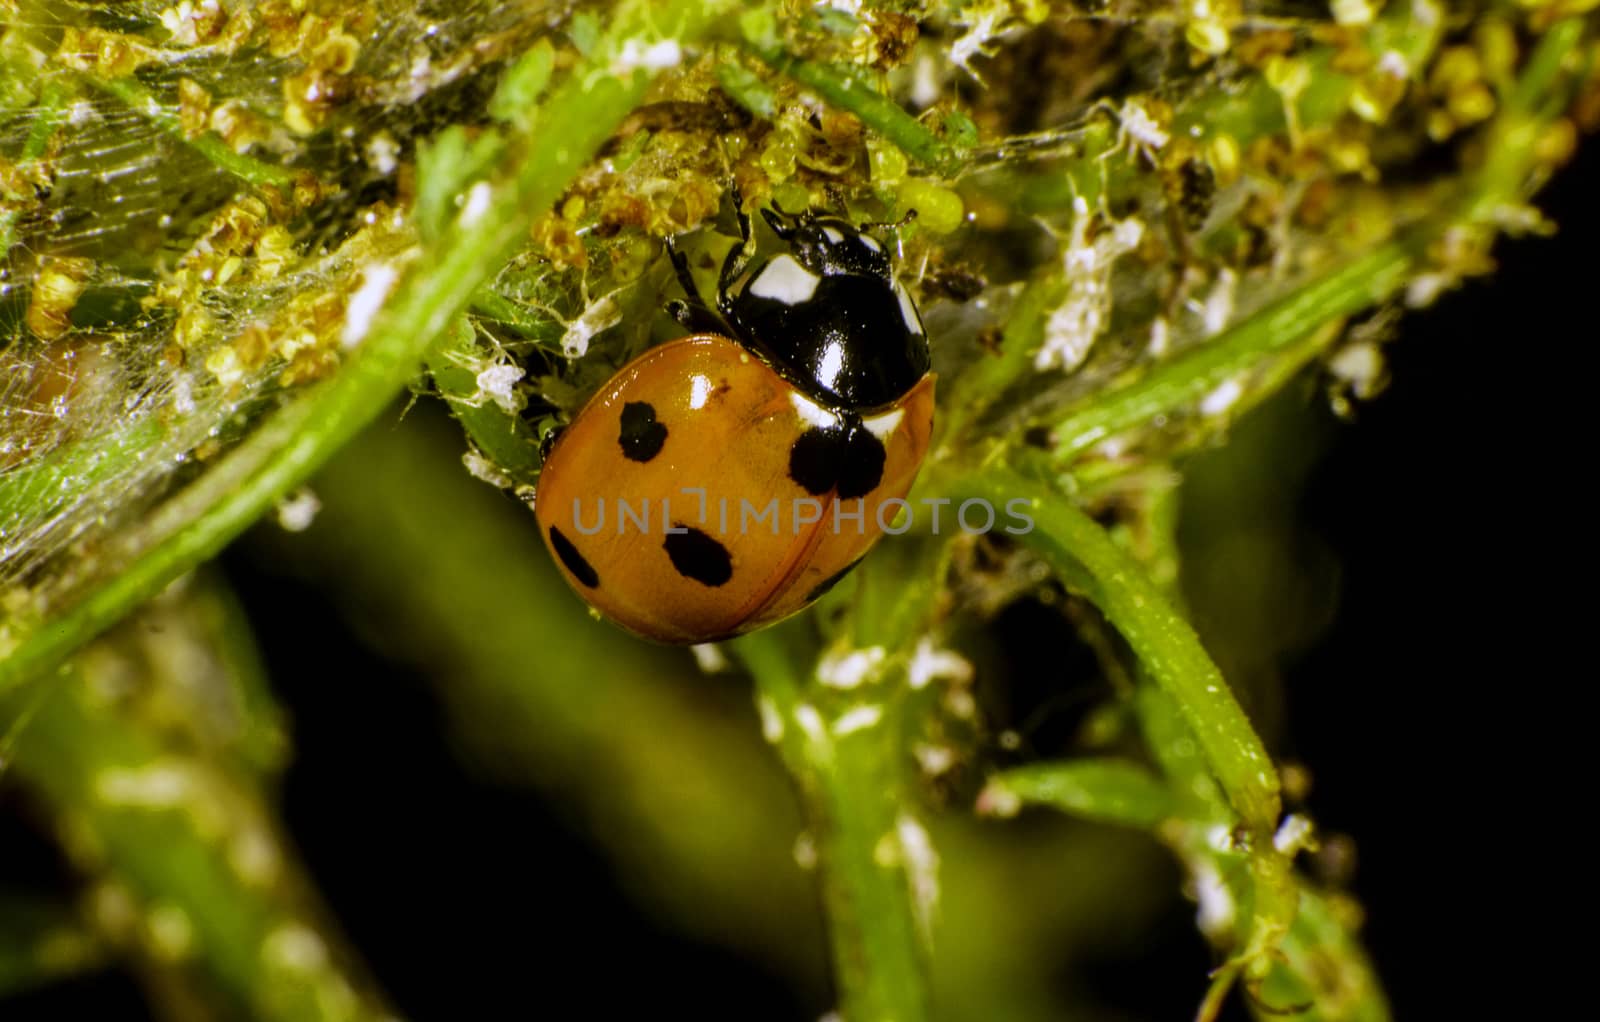 Ladybug eating plant lice